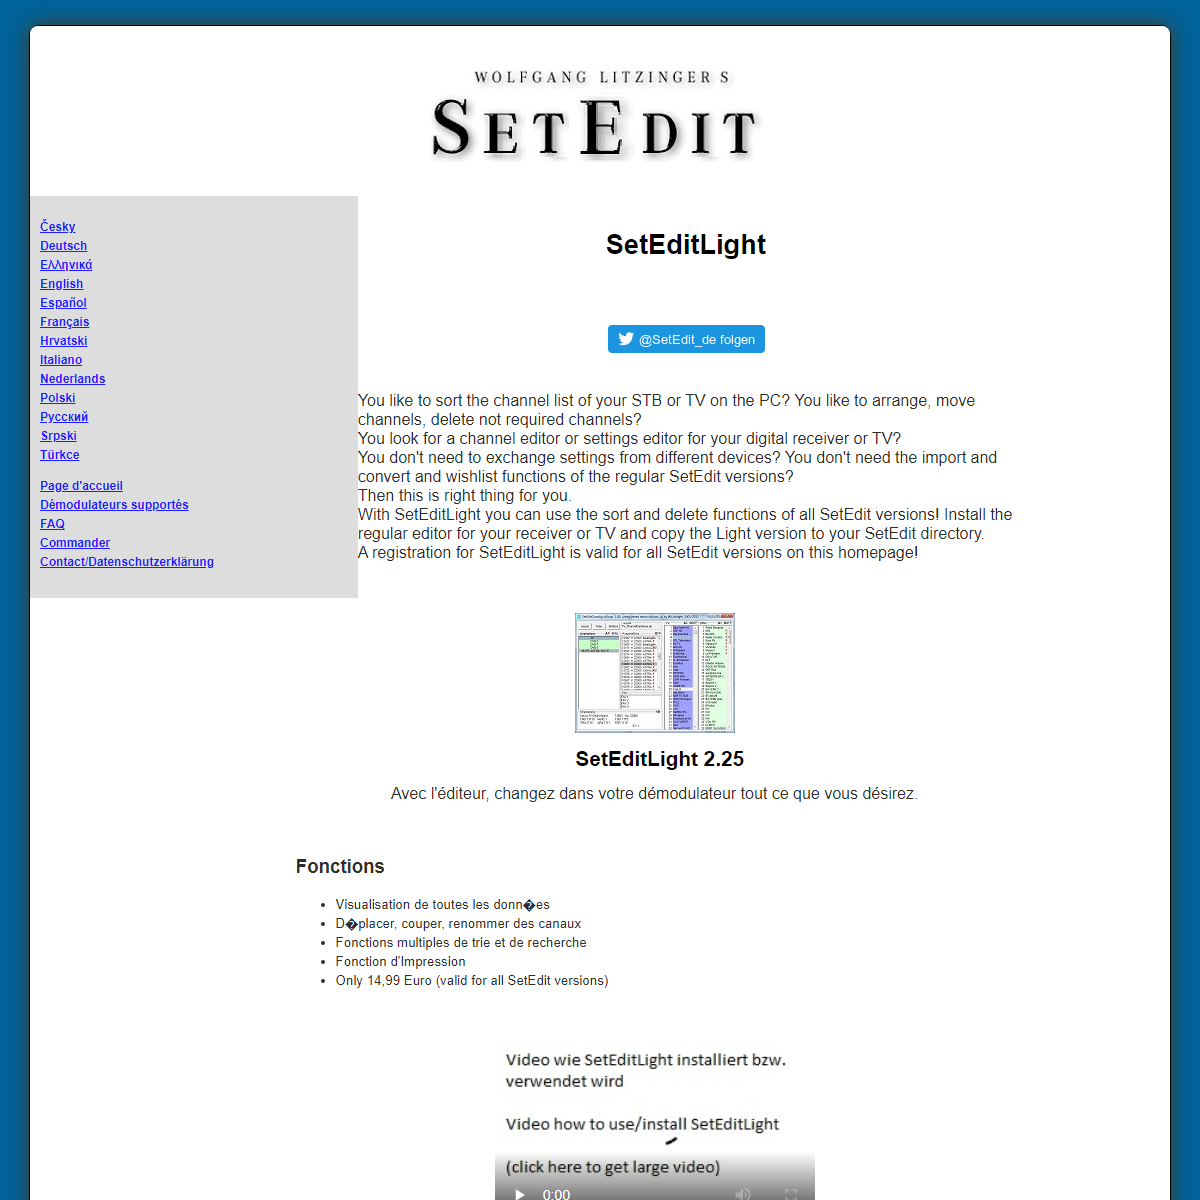 A complete backup of https://www.setedit.de/SetEdit.php?spr=4&Editor=169